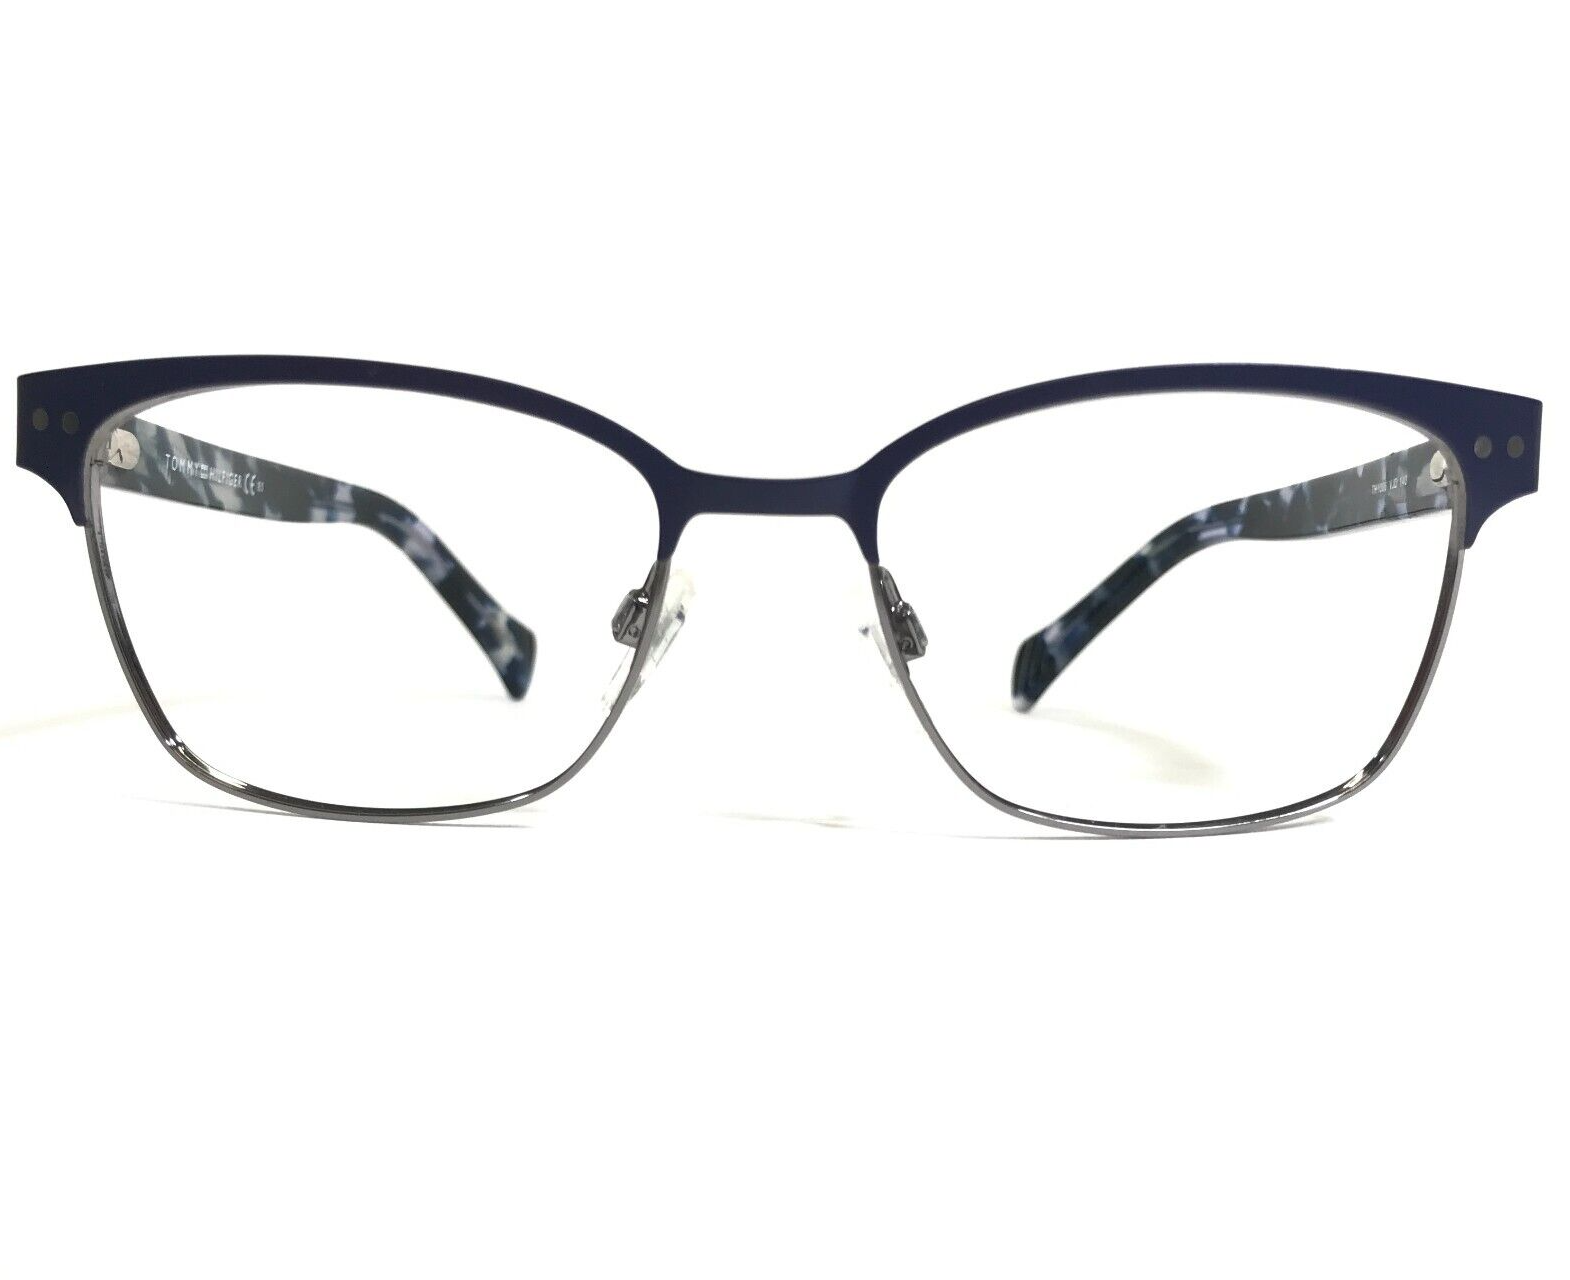 Primary image for Tommy Hilfiger Eyeglasses Frames TH 1306 VJD Blue Silver Tortoise 52-17-140